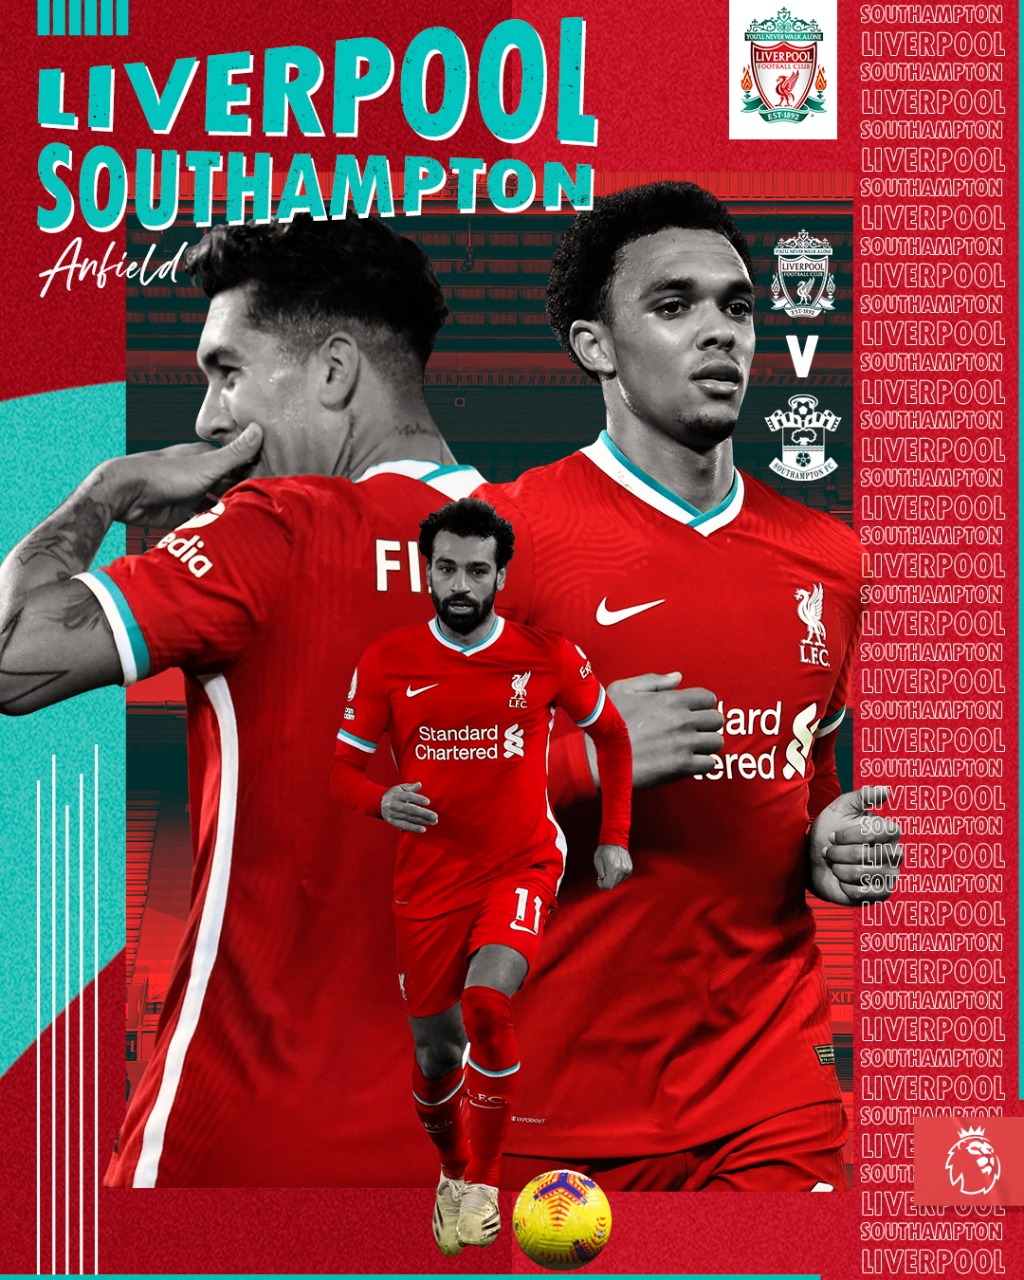 35. Spieltag der Premiere League 2020/21 - 08.05. 2021 21:15 FC Liverpool - FC Southampton - Seite 2 666